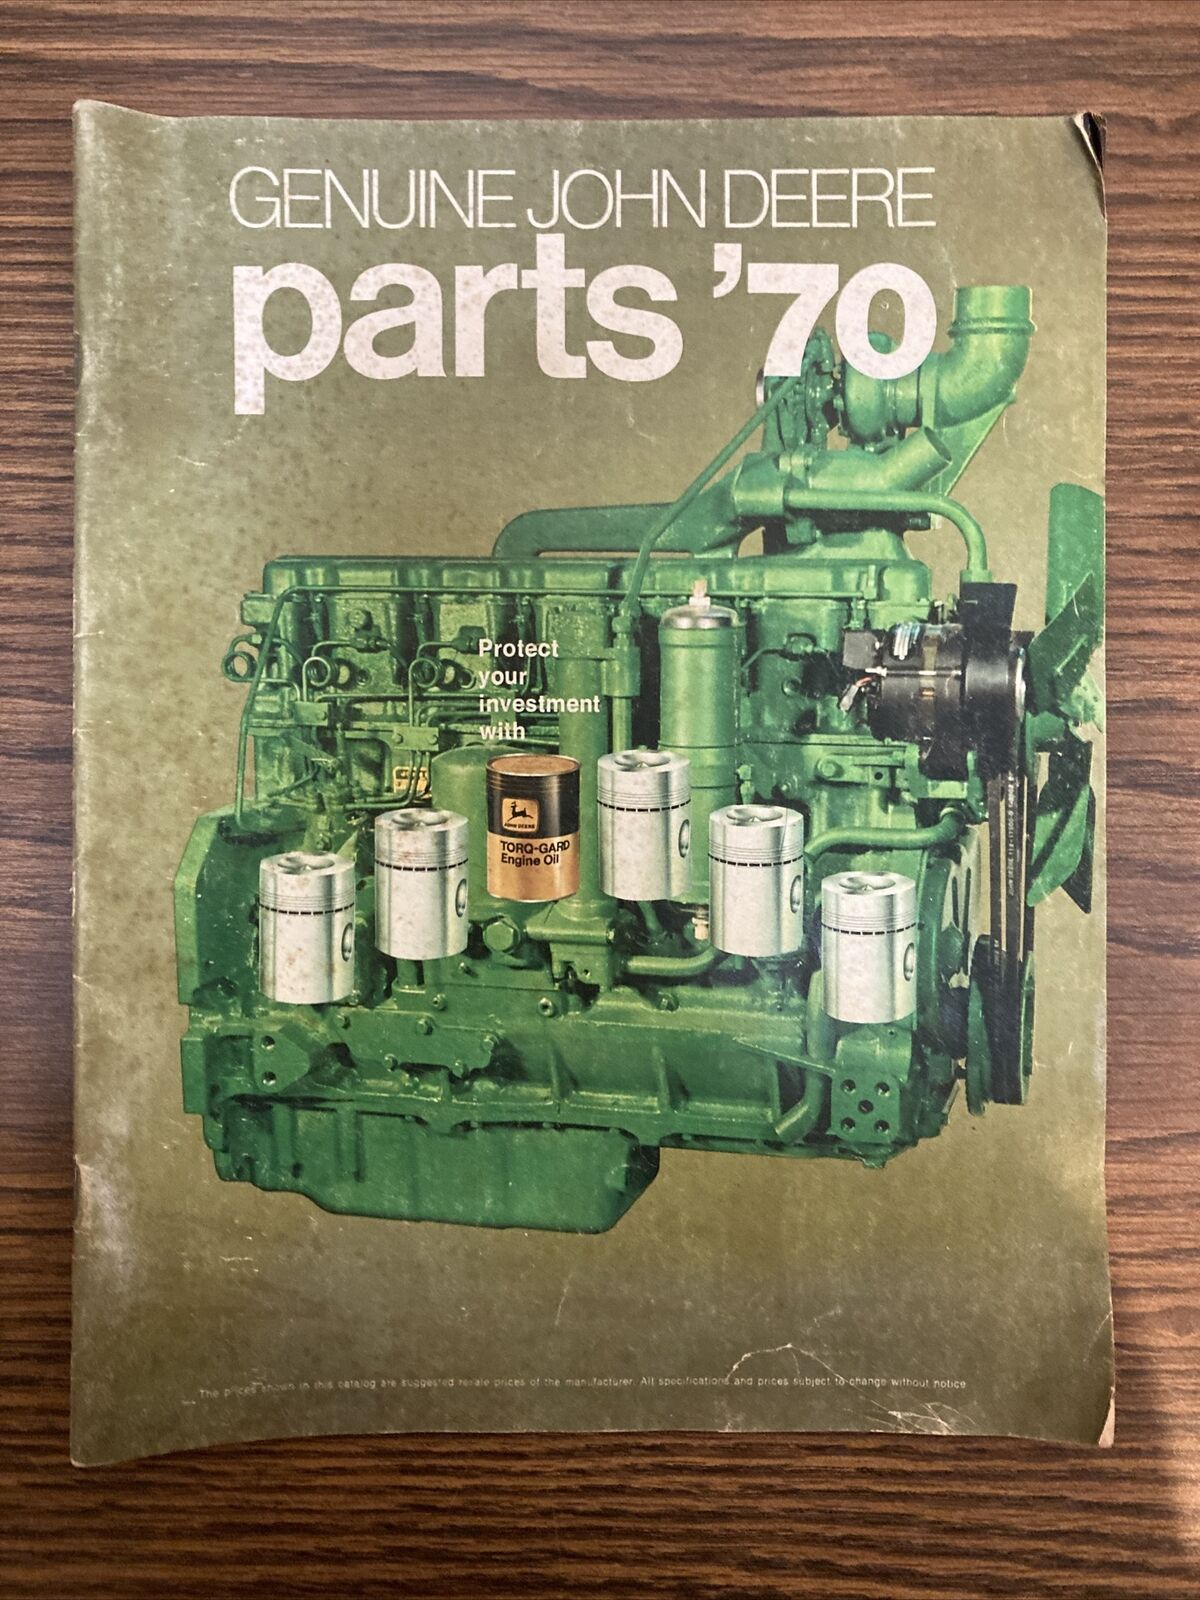 Vintage 1970 John Deere “Genuine John Deere Parts’70” Brochure